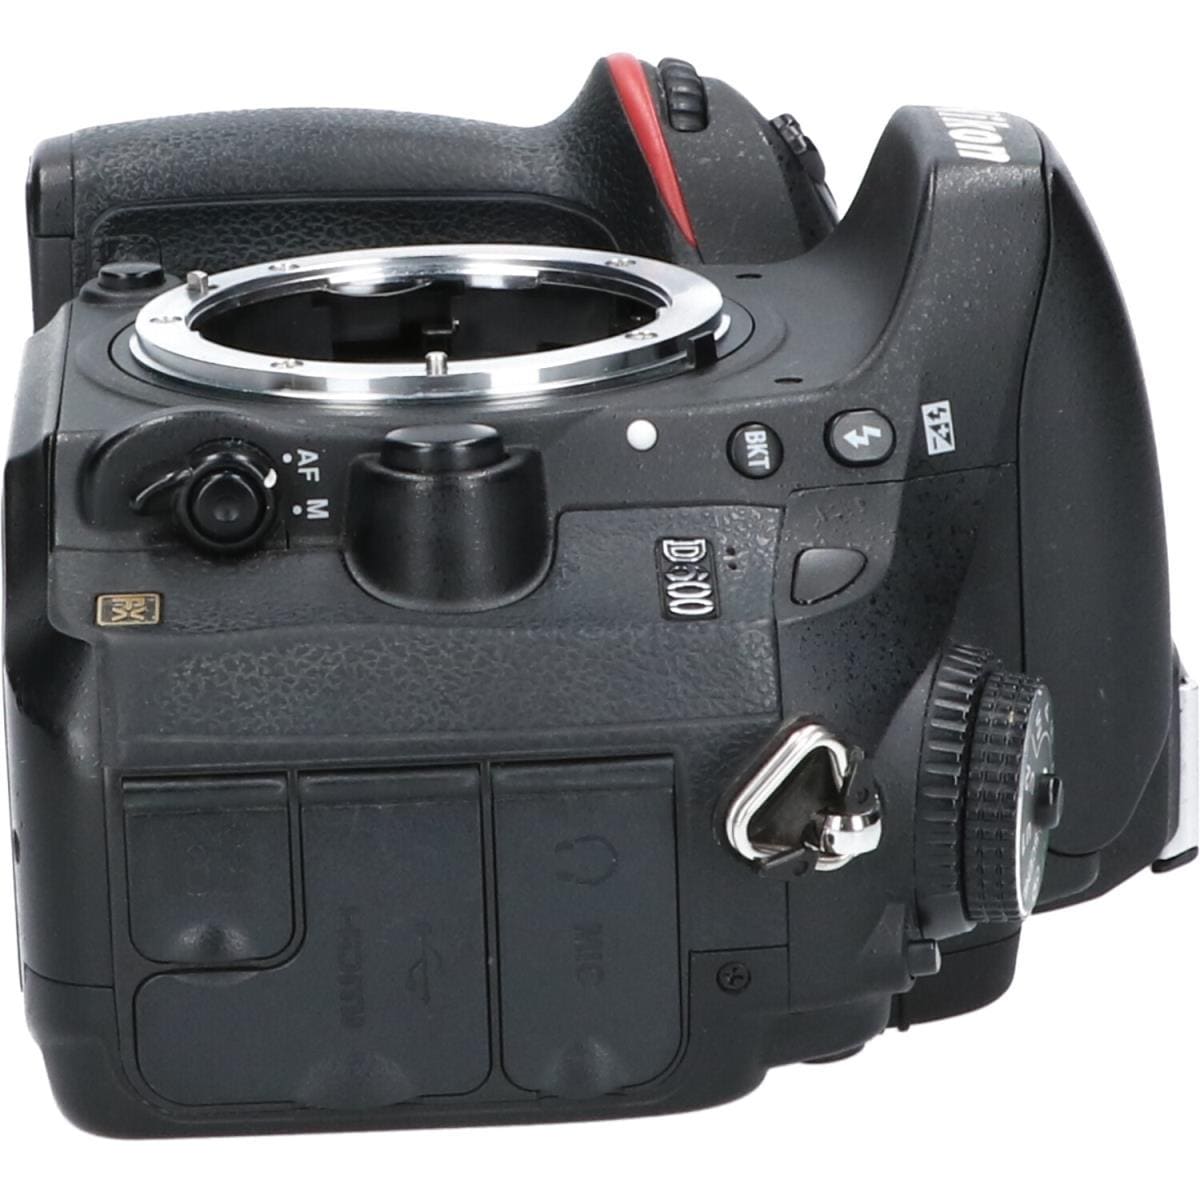 外観並級】Nikon デジタル一眼レフカメラ D600 ボディー D600 #a10102